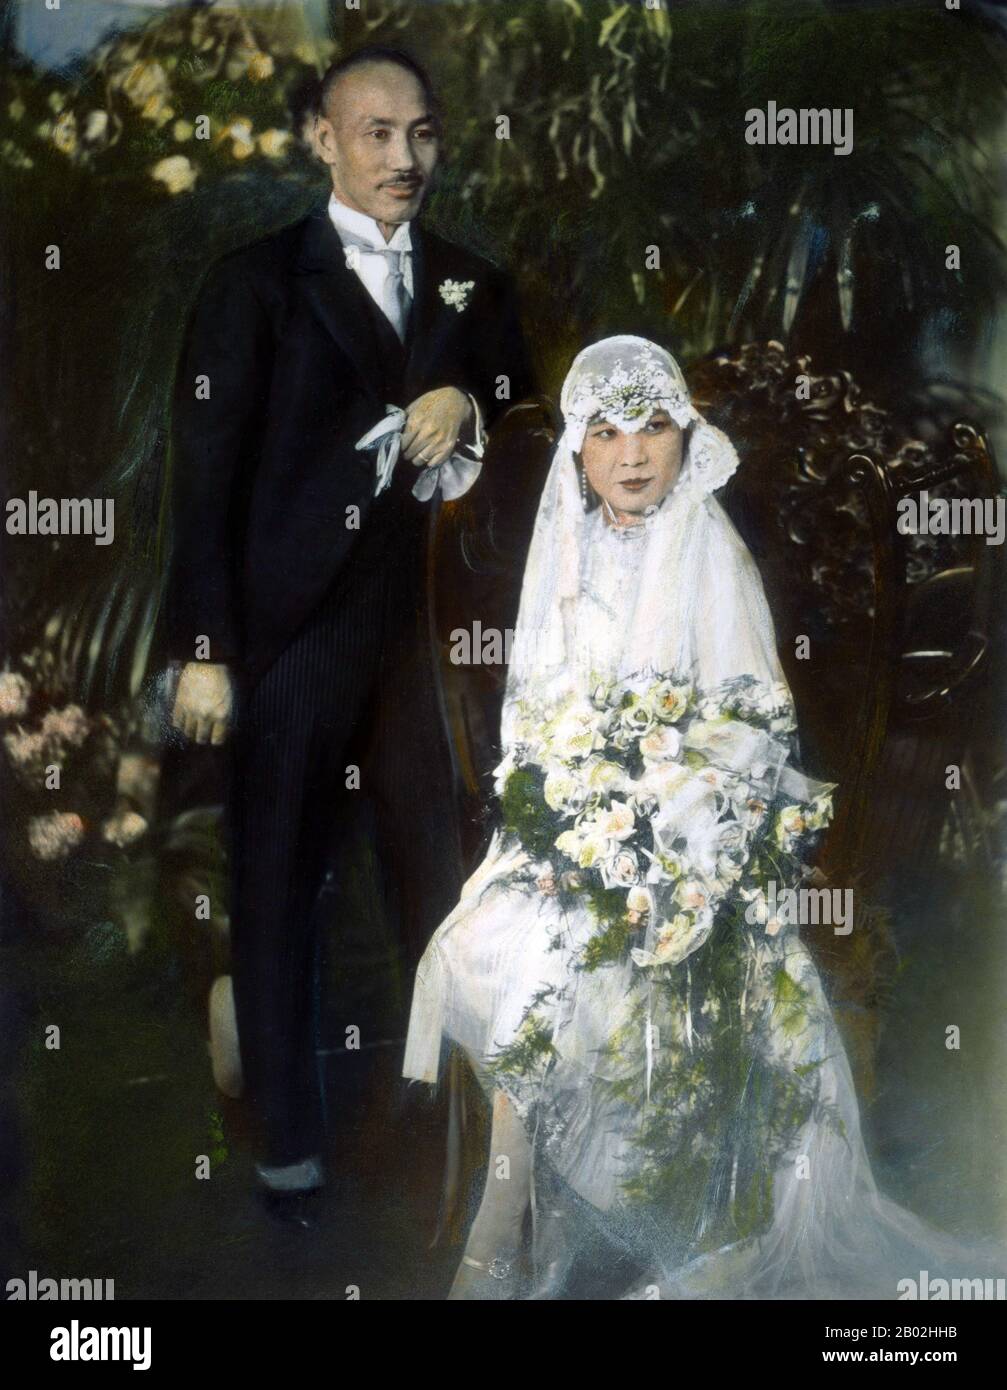 Matrimonio Di Chiang Kai Shek E Soong Maggio Ling, Shanghai, 1 Dicembre 1927. Soong May-ling o Mei-ling, conosciuto anche come Madame Chiang Kai-shek (Song Meiling, 1898-2003), First Lady of the Republic of China (ROC) e moglie del presidente Chiang Kai-shek. Era una donna politica e pittore. La più giovane e l'ultima sopravvissuta delle tre sorelle Soong, ha svolto un ruolo importante nella politica della Repubblica di Cina ed è stata la sorella nella legge di Song Qingling, moglie del presidente Sun Yat-sen, il fondatore della Repubblica cinese (1912). Foto Stock